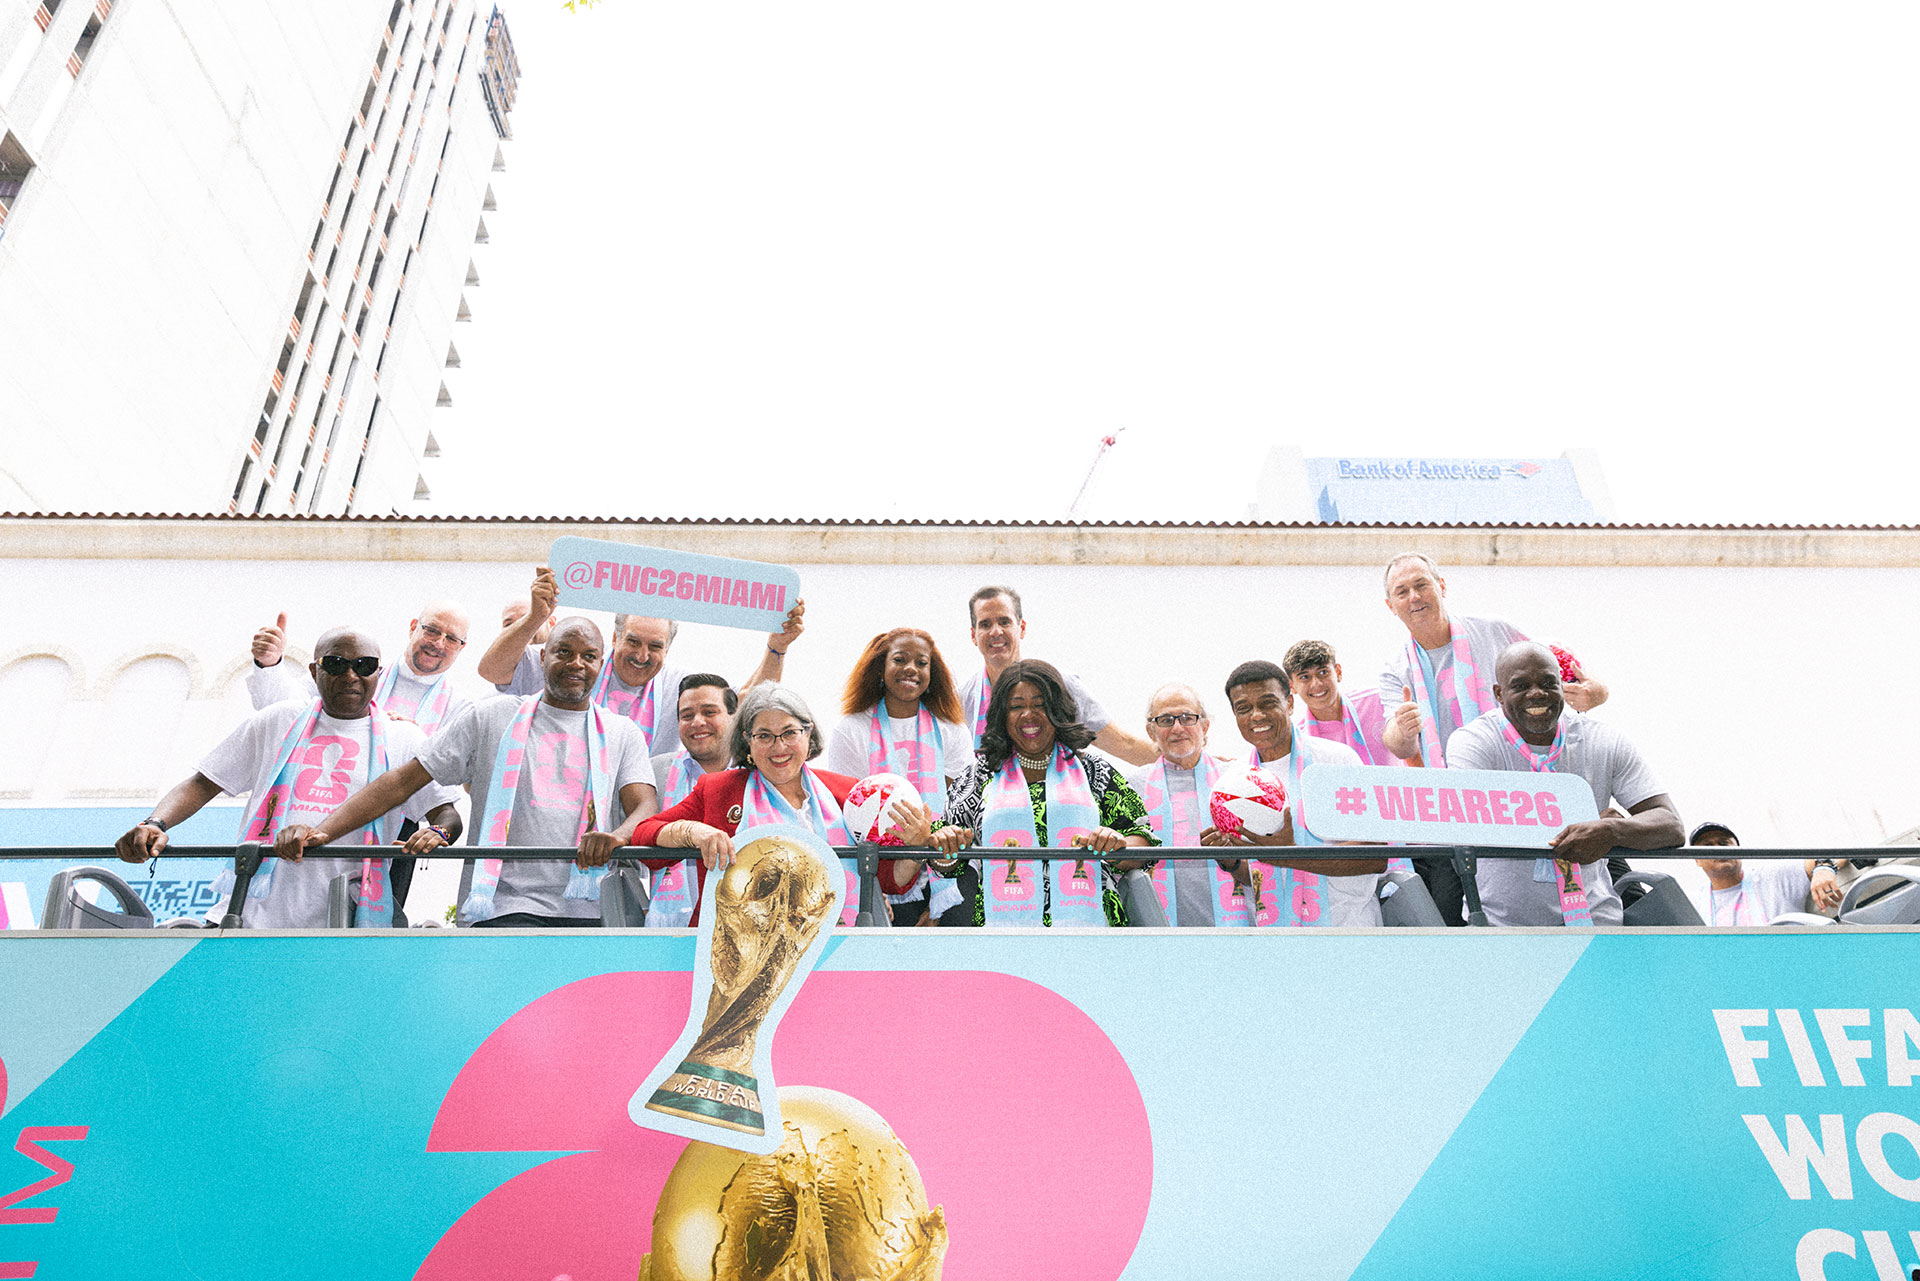 La alcaldesa Daniella Levine Cava, Rolando Aedo, Director de Operaciones de Greater Miami Convention & Visitors Bureau, y un grupo de leyendas del fútbol se preparan para el recorrido en autobús por la ciudad anfitriona de Miami para la Copa Mundial FIFA 26.